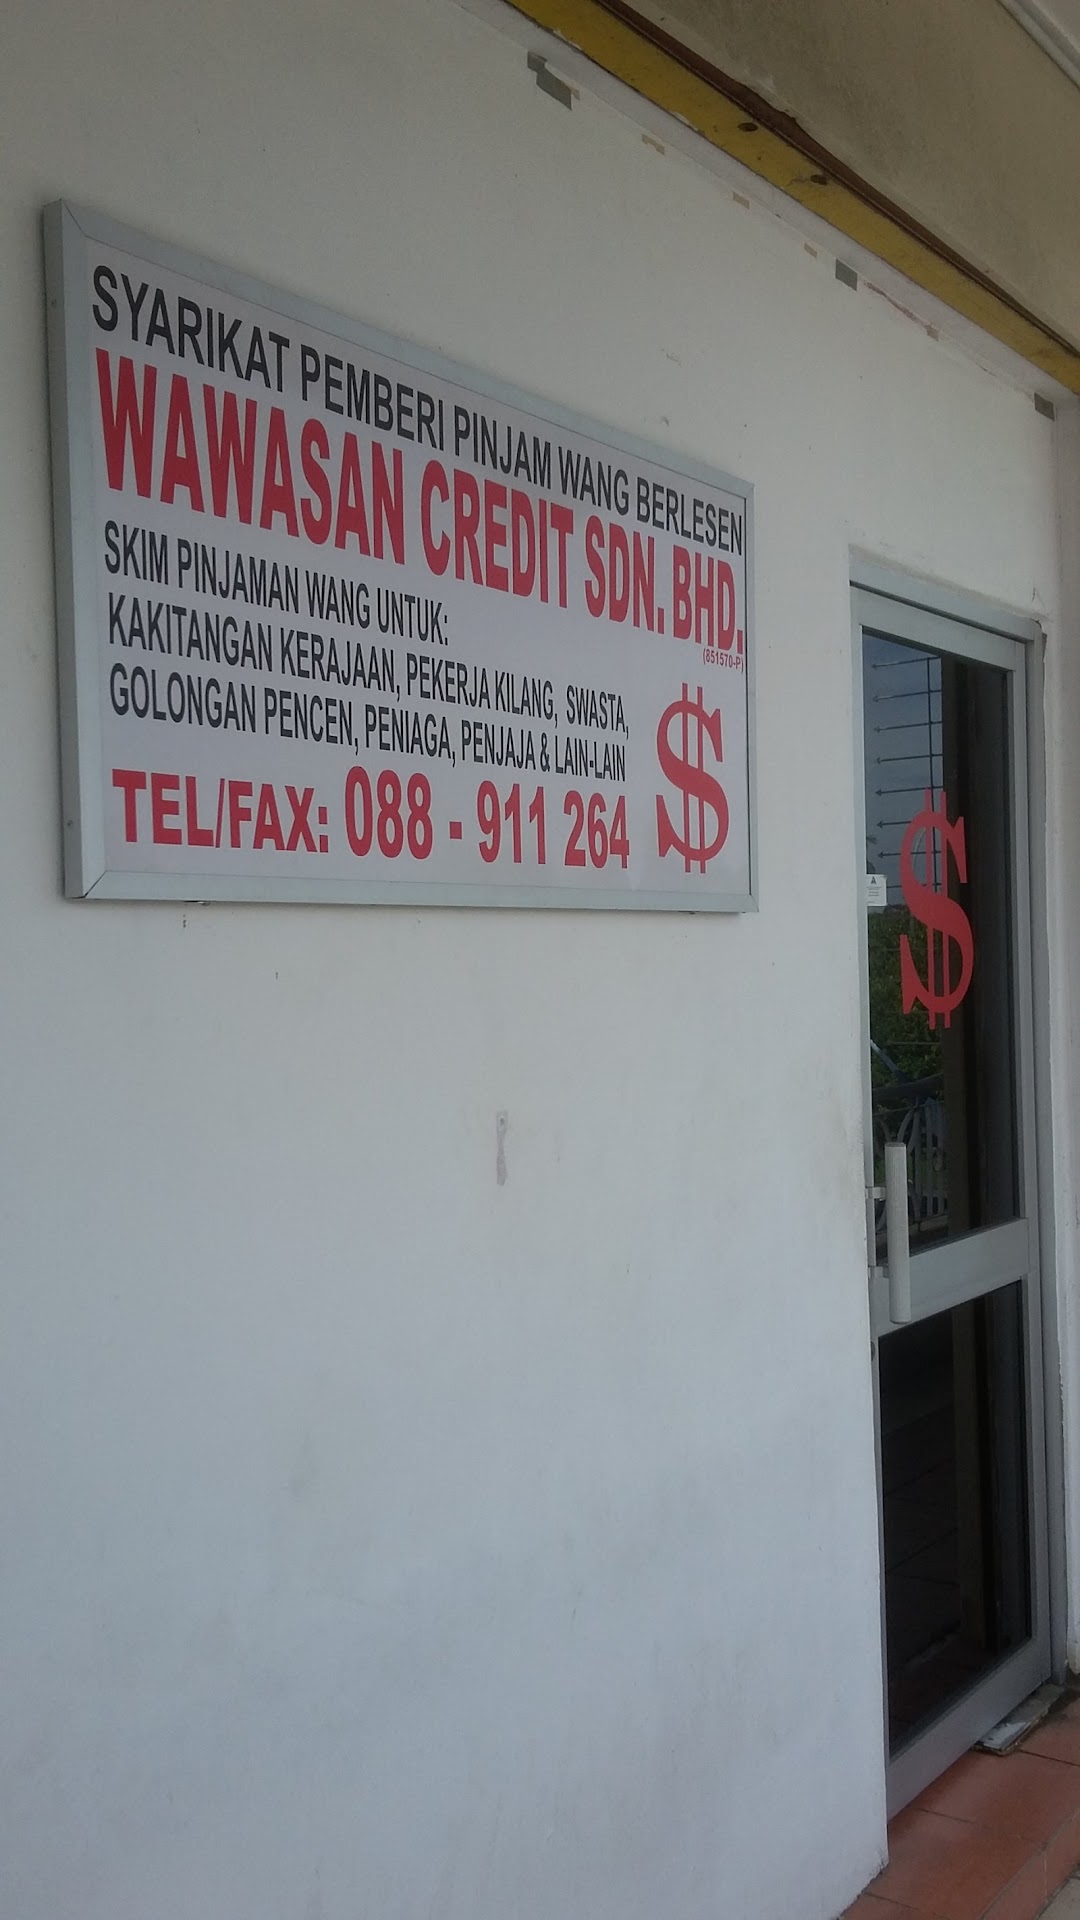 Wawasan Credit